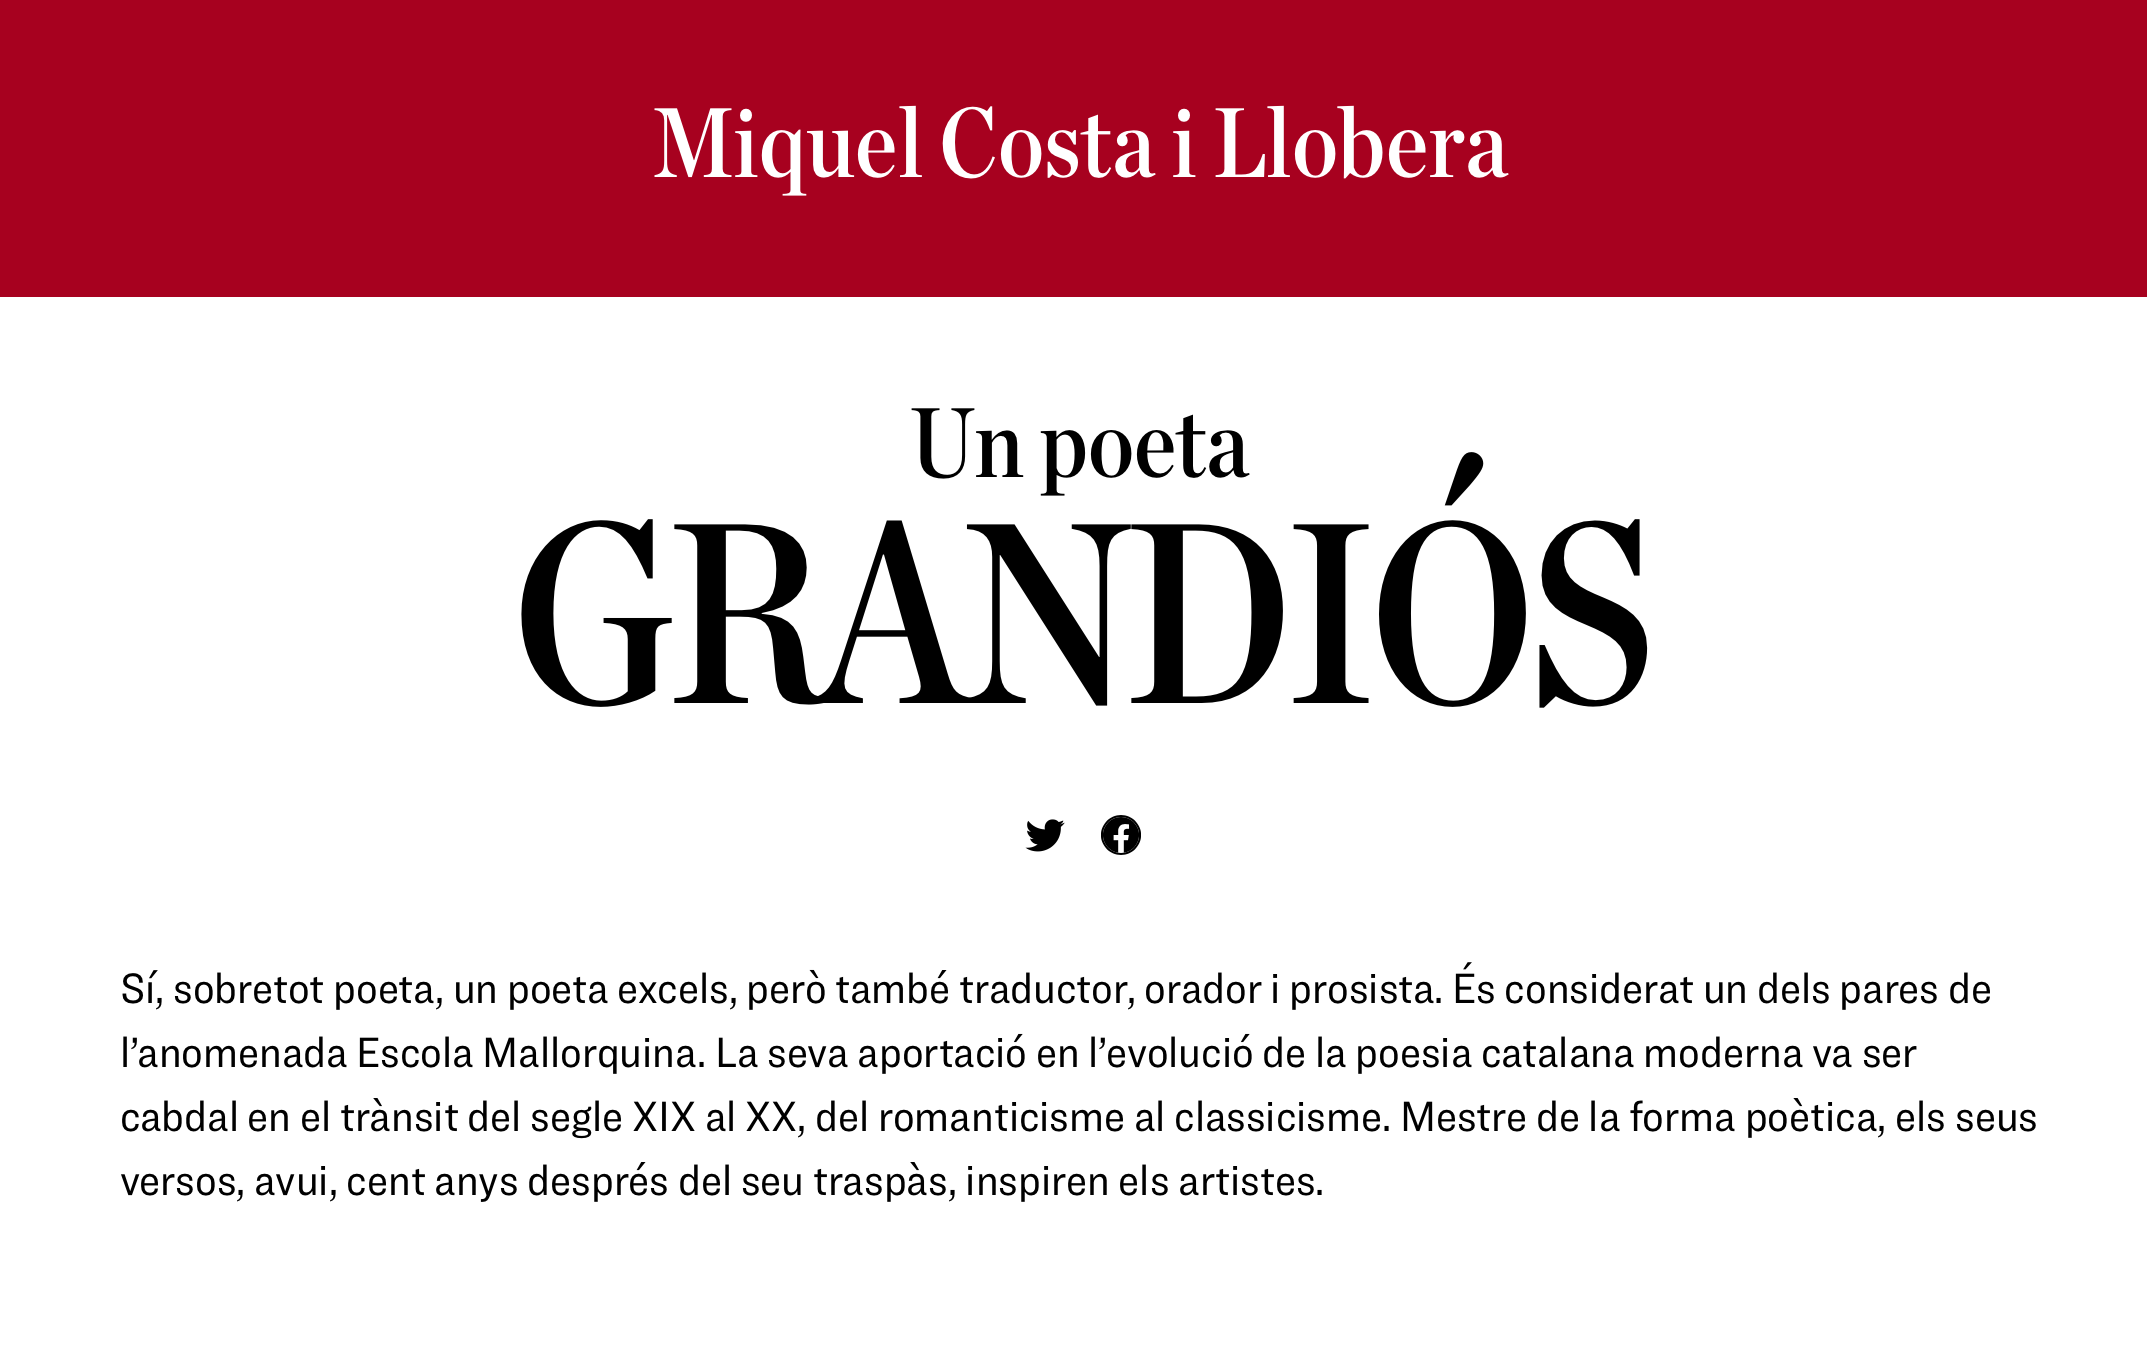 Pàgina inicial del web dedicat a Miquel Costa i Llobera